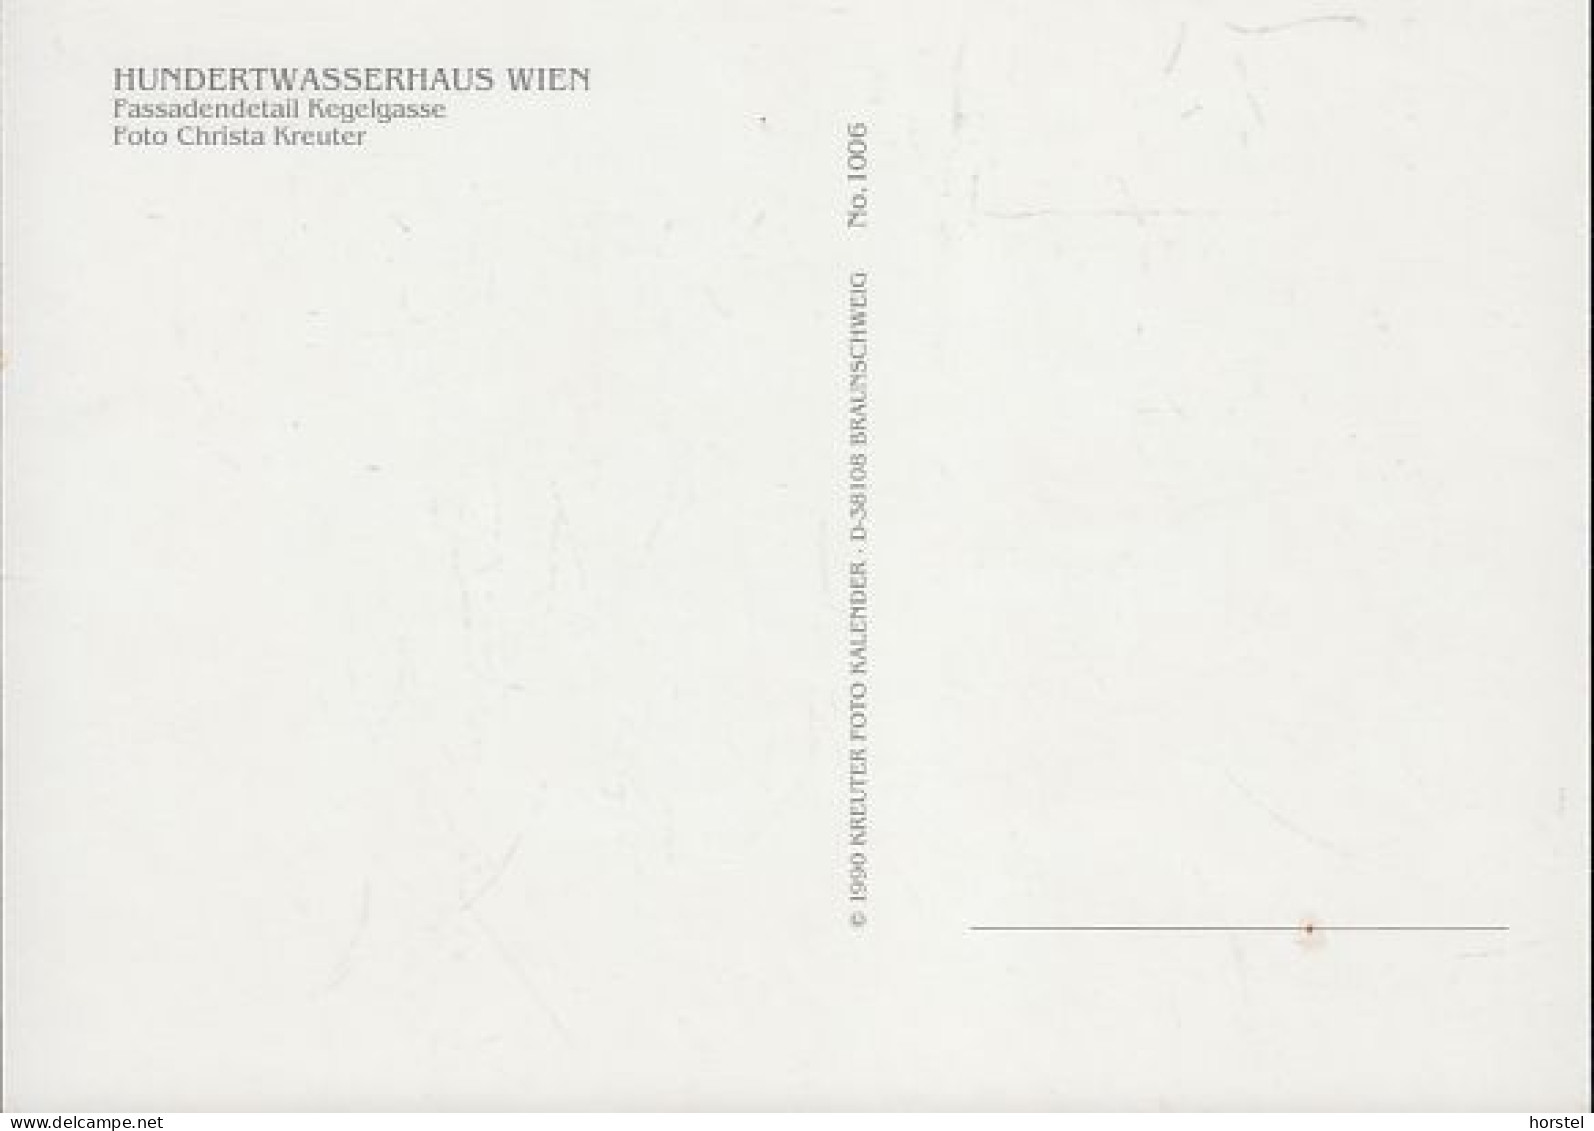 Austria - 1010 Wien - Hundertwasser-Haus In Der Kegelgasse - Vienna Center